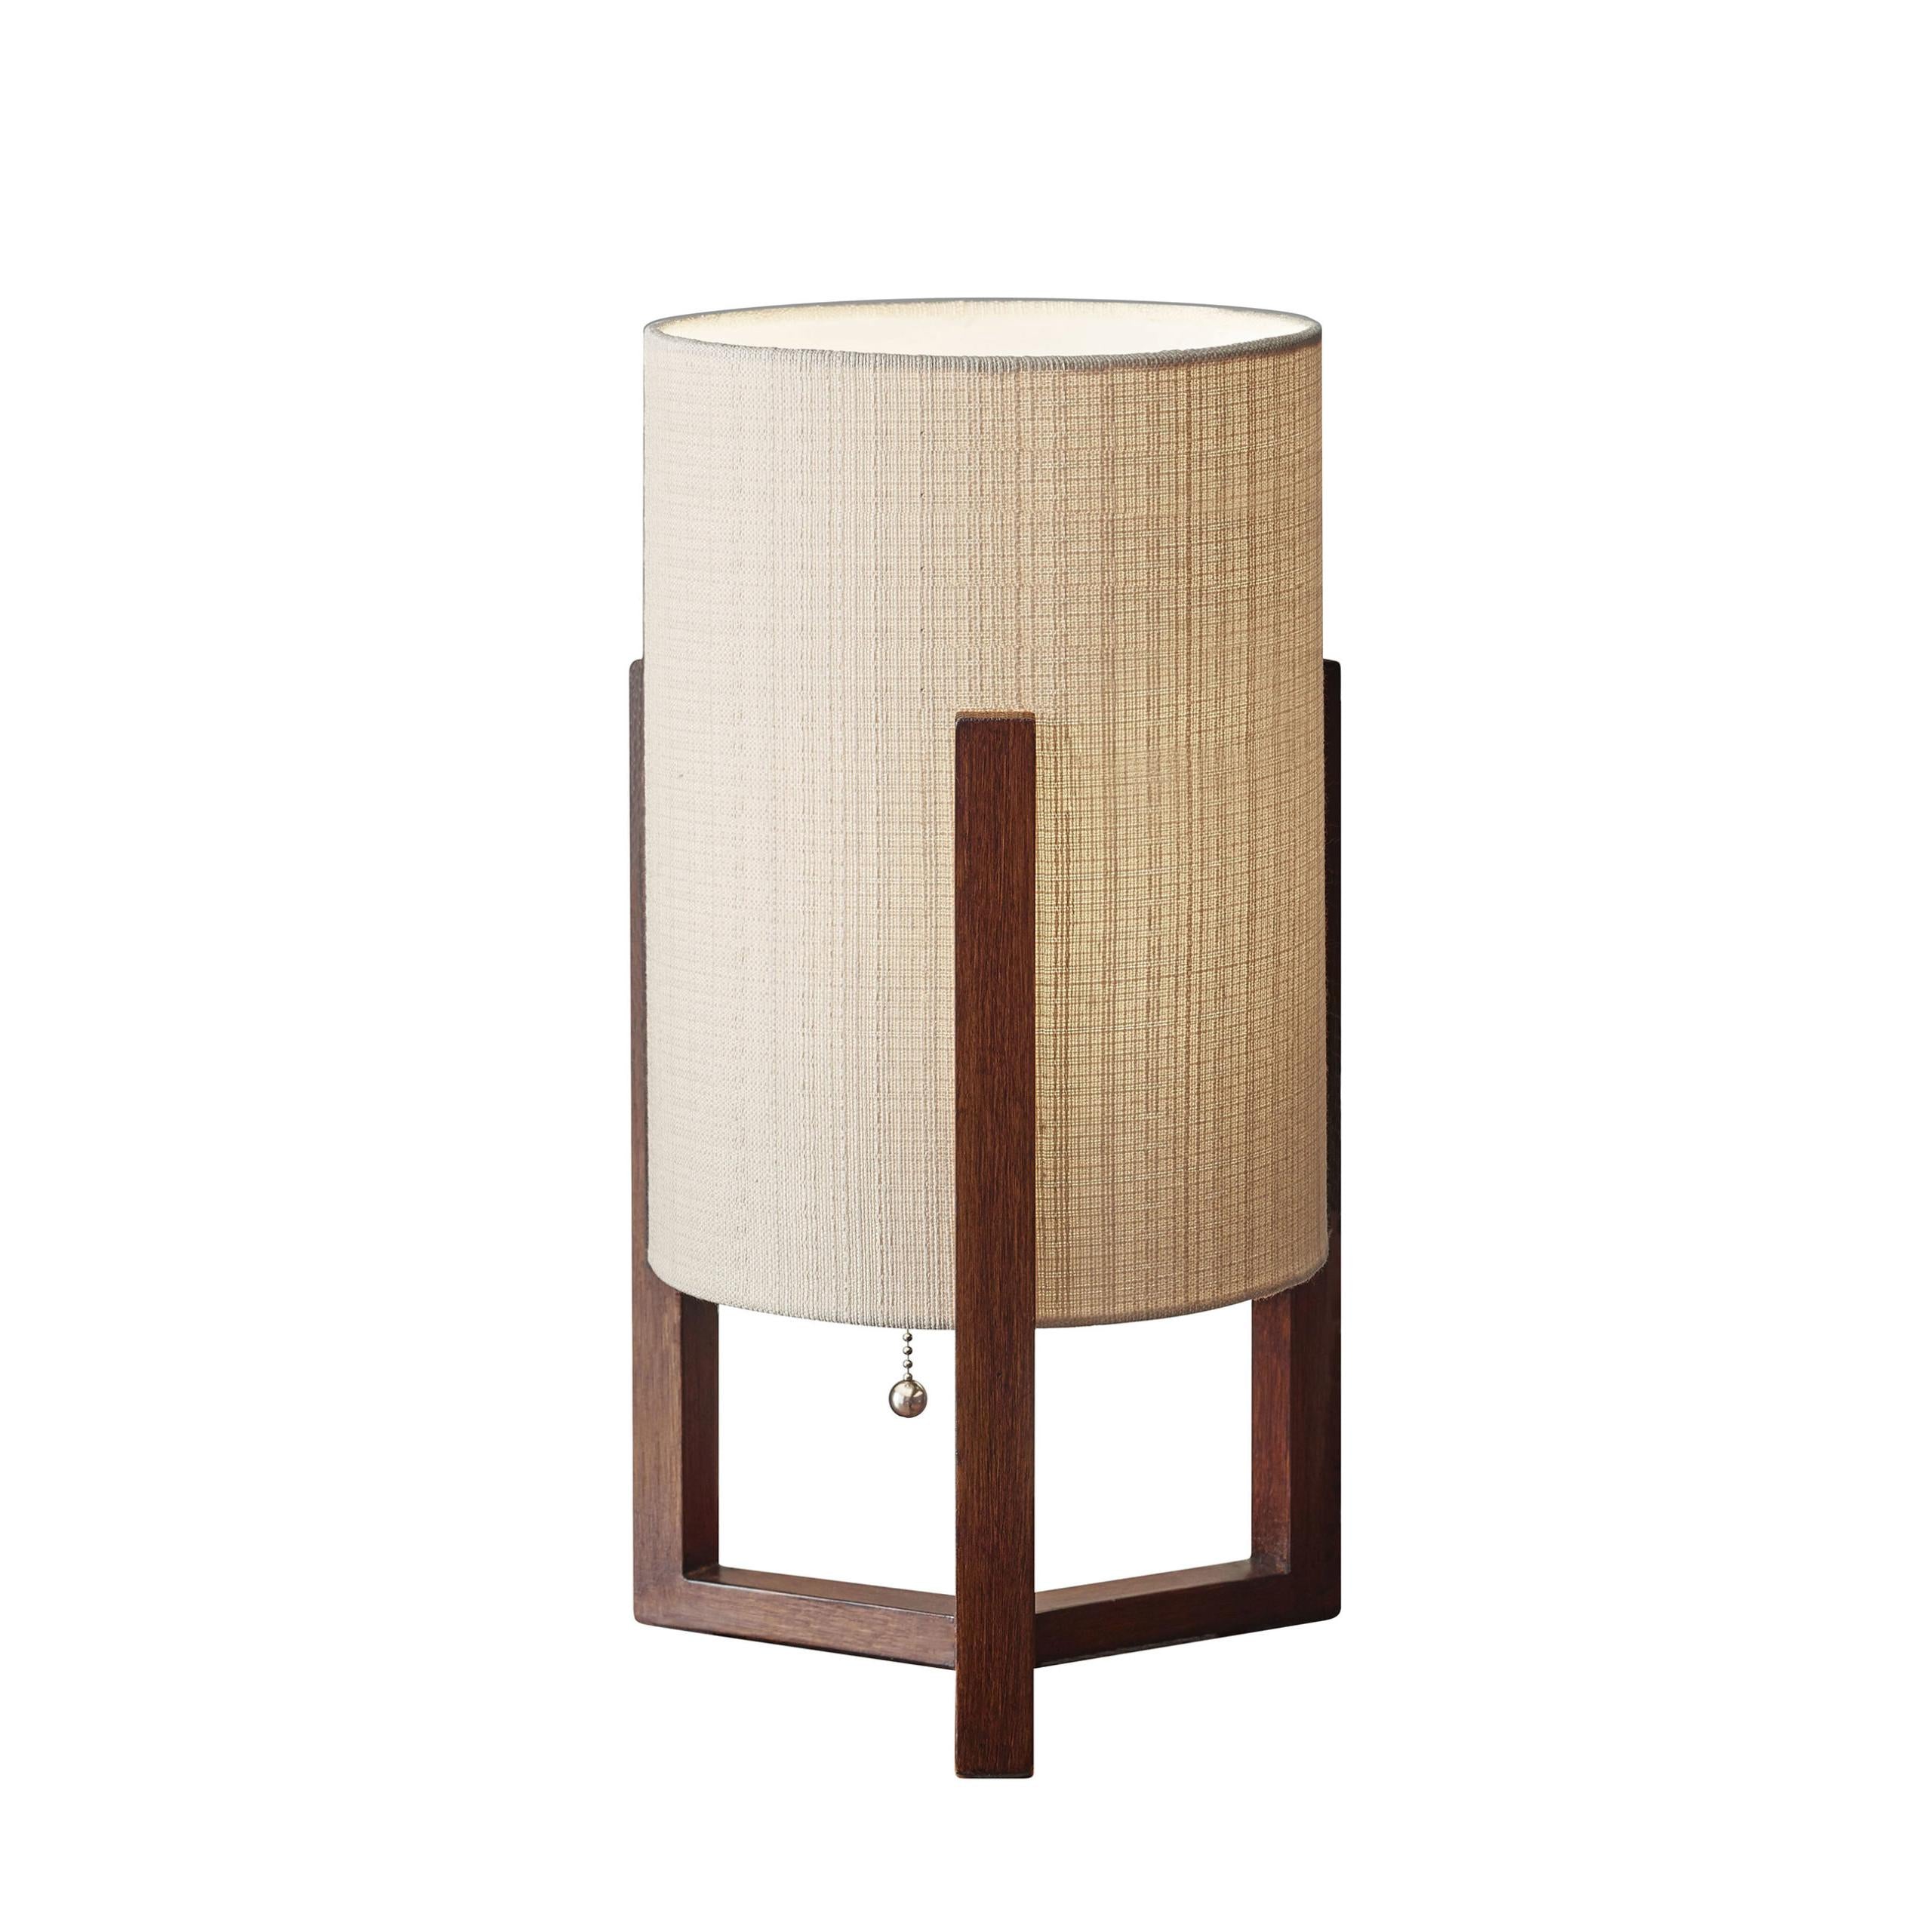 QUINN Lampe sur table Bois - 1502-15 | ADESSO